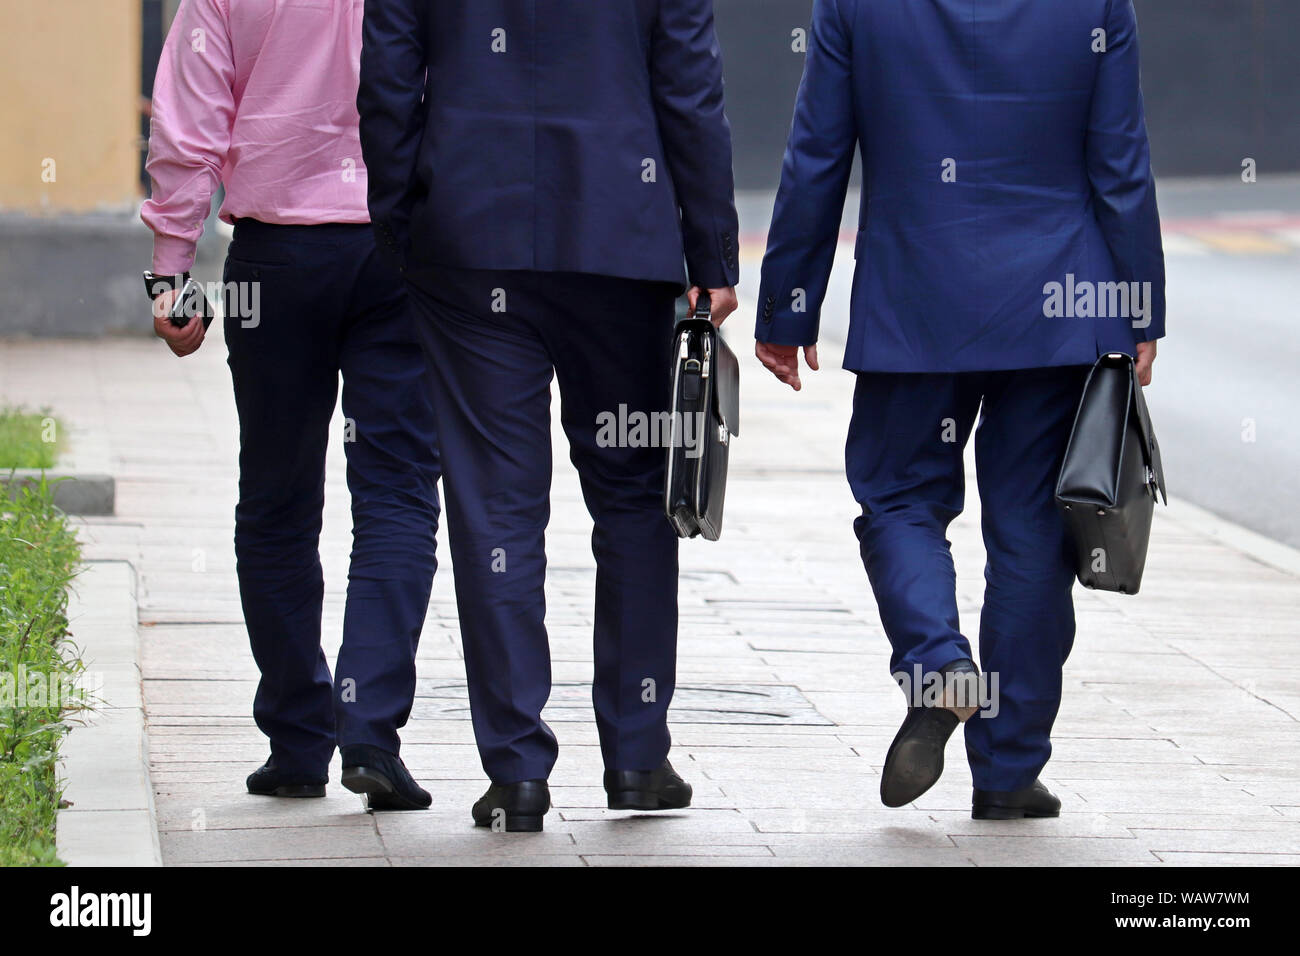 Männer in Anzügen mit Aktentaschen gehen auf eine Straße, Ansicht von hinten. Konzept der stilvolle erfolgreiche Menschen, Partner, Geschäftsleute, Offizielle, Karriere Stockfoto